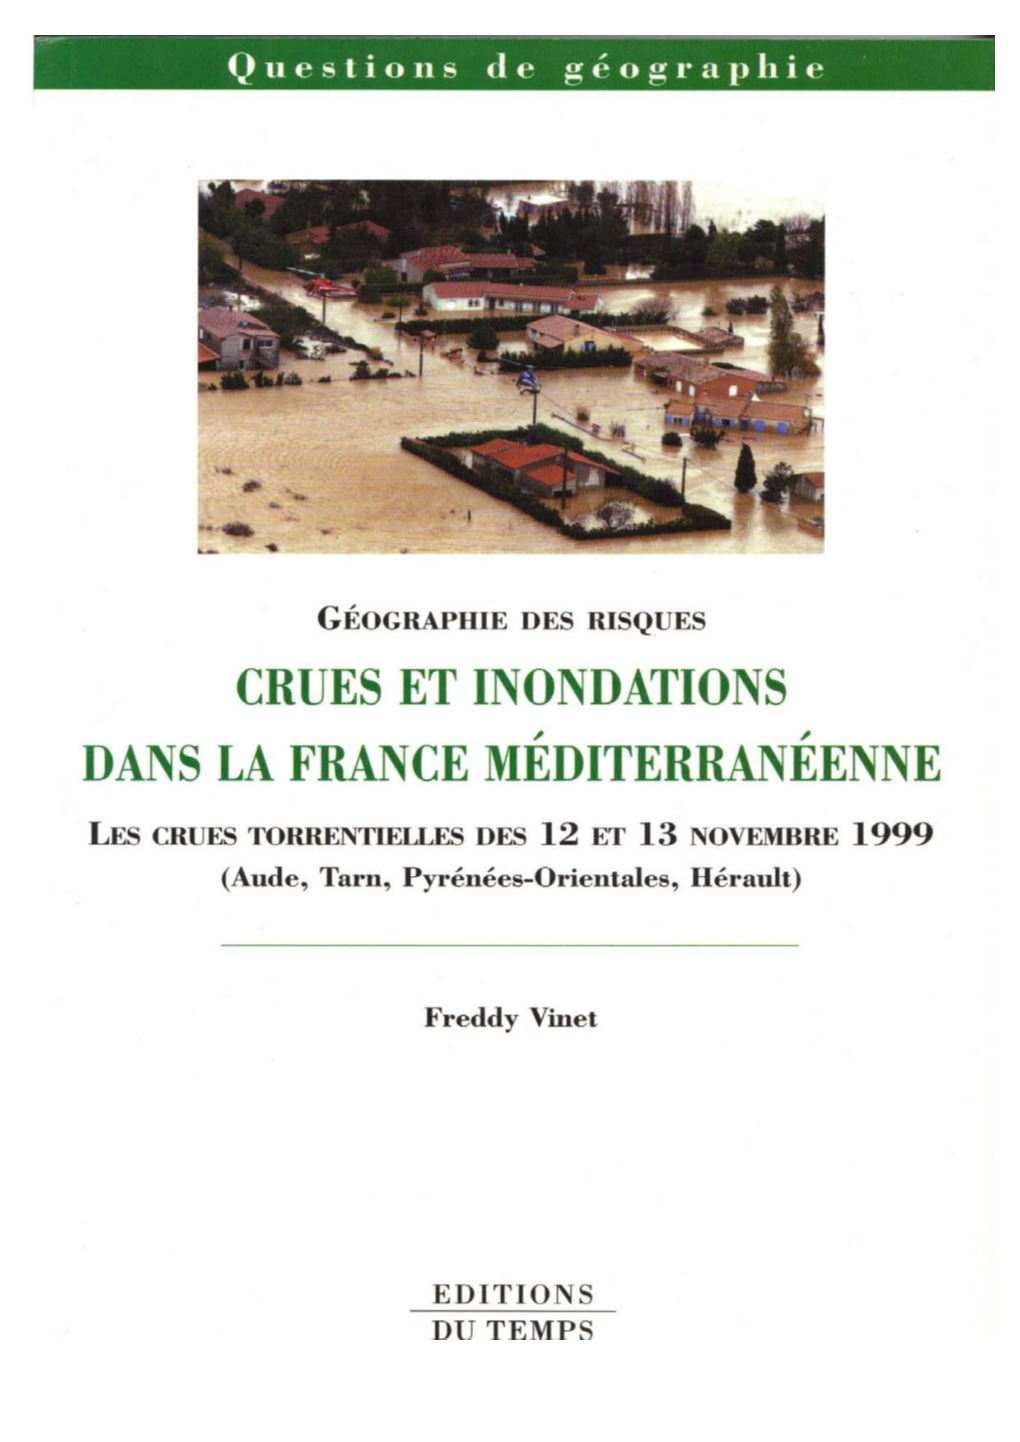 Les Crues Torrentielles Des 12 Et 13 Novembre 1999 (Aude, Tarn, Pyrénées-Orientales Et Hérault)